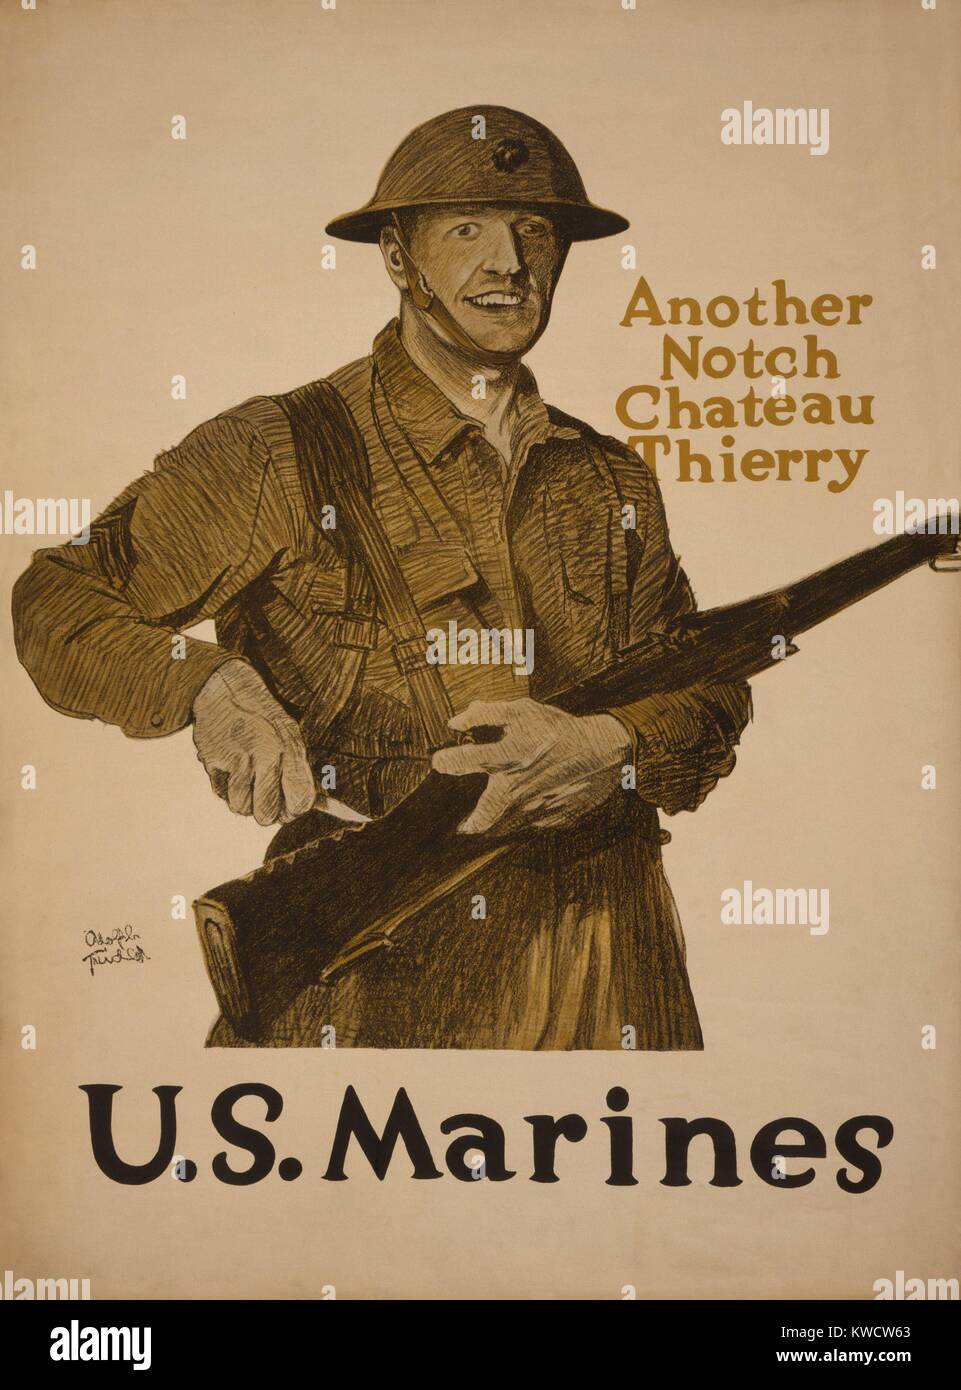 Weltkrieg 1. Recruiting Poster. Eine andere Kerbe, Chateau Thierry - USA Marines. Us-Marines gewann die Schlacht von Chateau-Thierry, am 18. Juli 1918. Es war eine der ersten Aktionen des amerikanischen Expeditionary Force (AEF), die begegnet einem deutschen Angriff am 15. Juli. (BSLOC 2013 1 184) Stockfoto